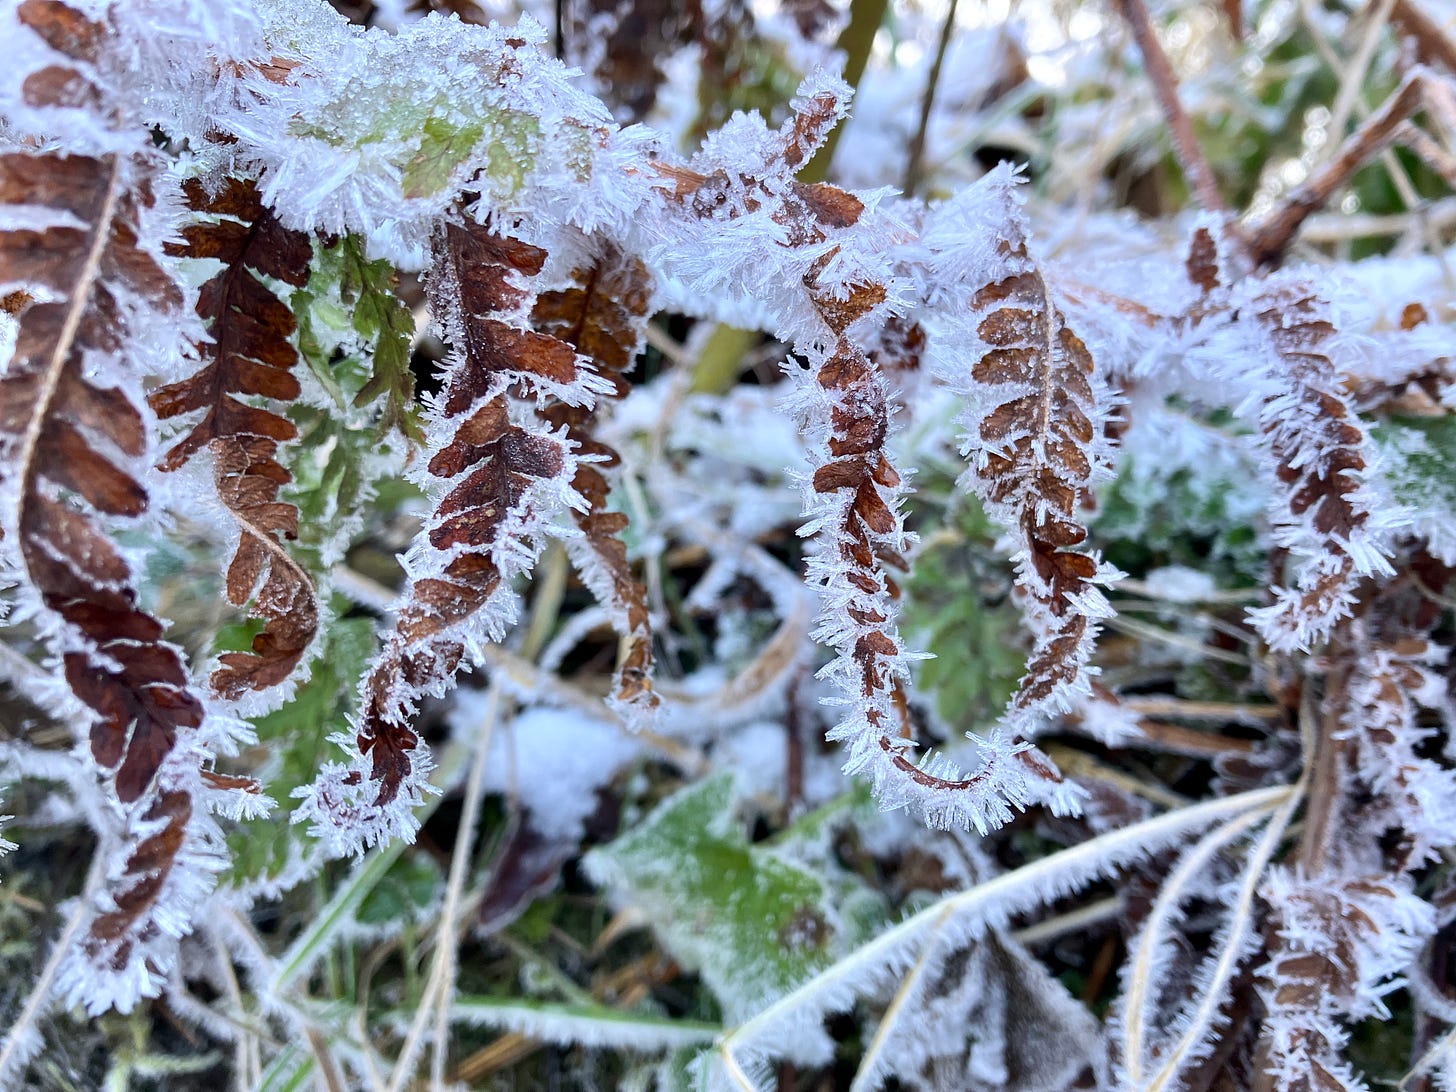 Hoar frost on fern leaves